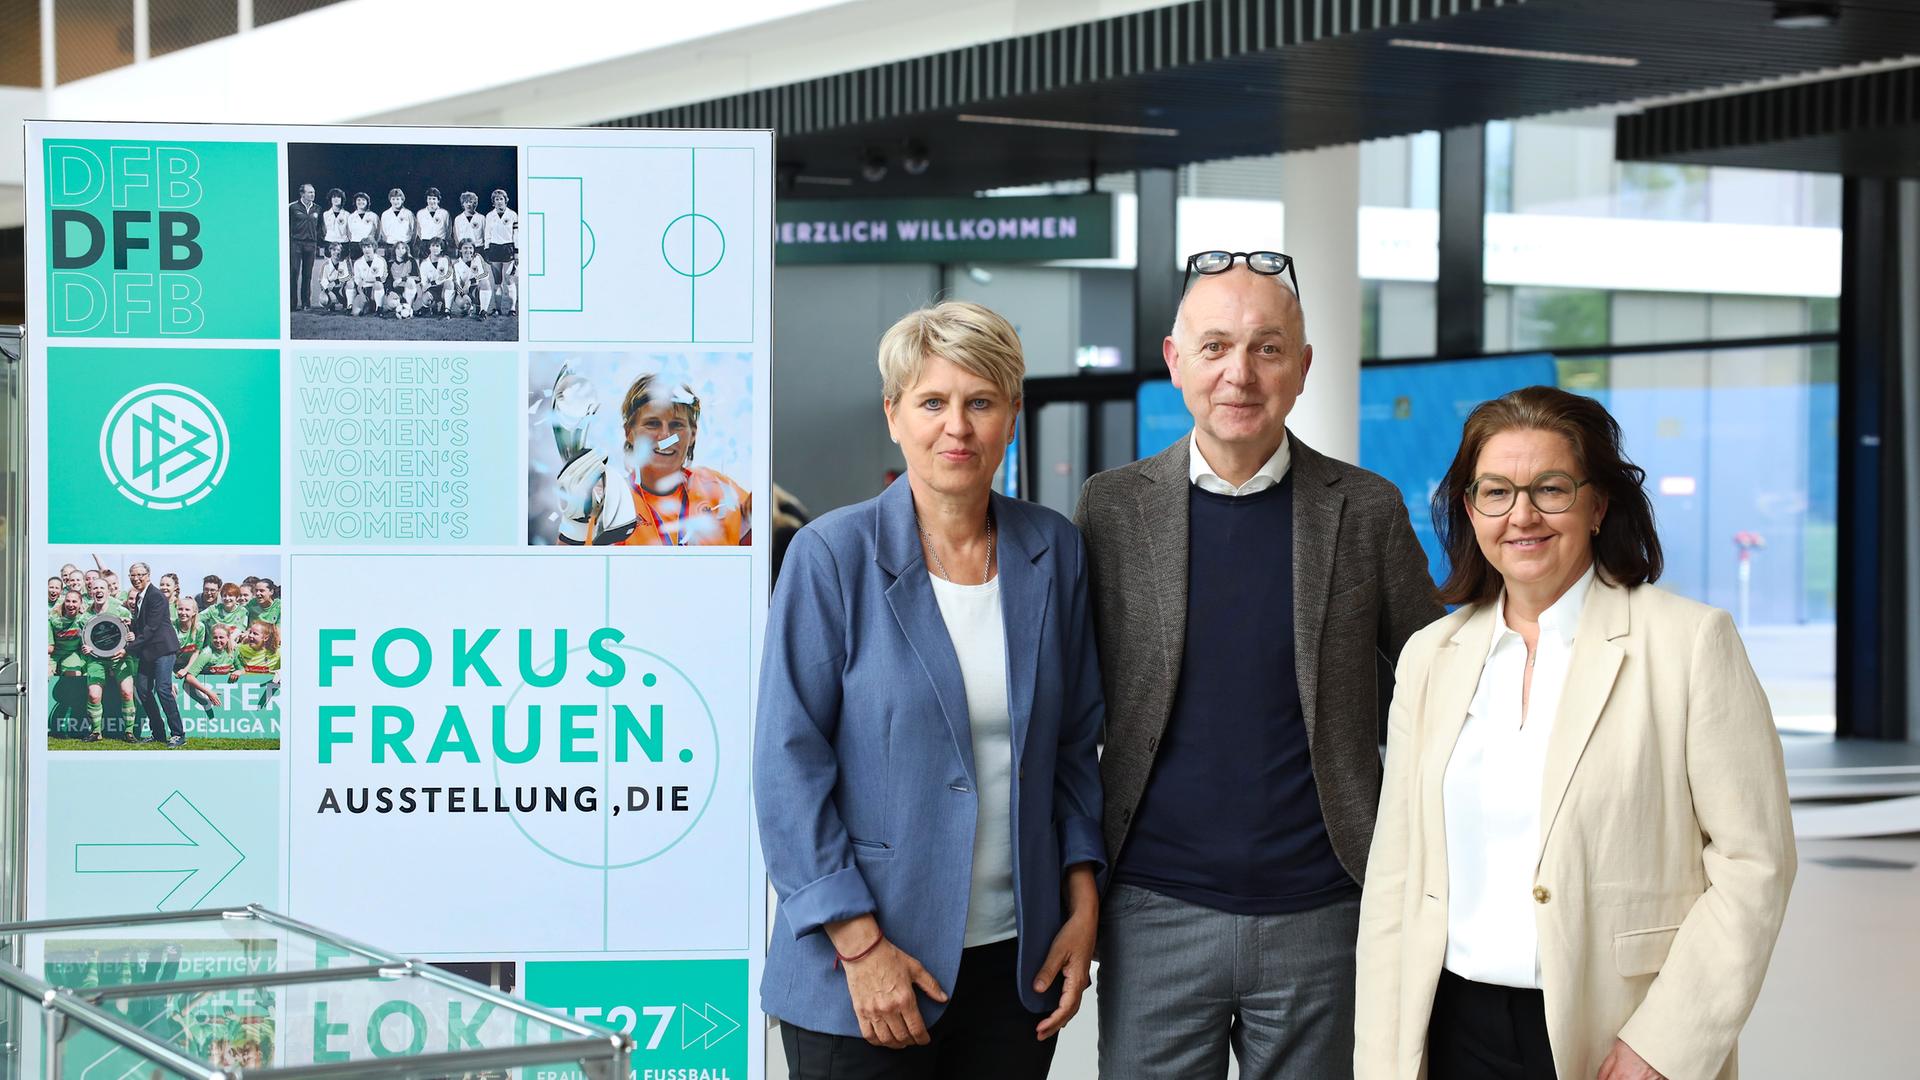 DFB Präsident Bernd Neuendorf steht zwischen Doris Fitschen, Gesamtkoordinatorin der Strategie "Frauen im Fußball" und Generalsekretärin Heike Ullrich neben einer Stellwand zu einer Ausstellung über Frauenfußball auf dem DFB Campus.